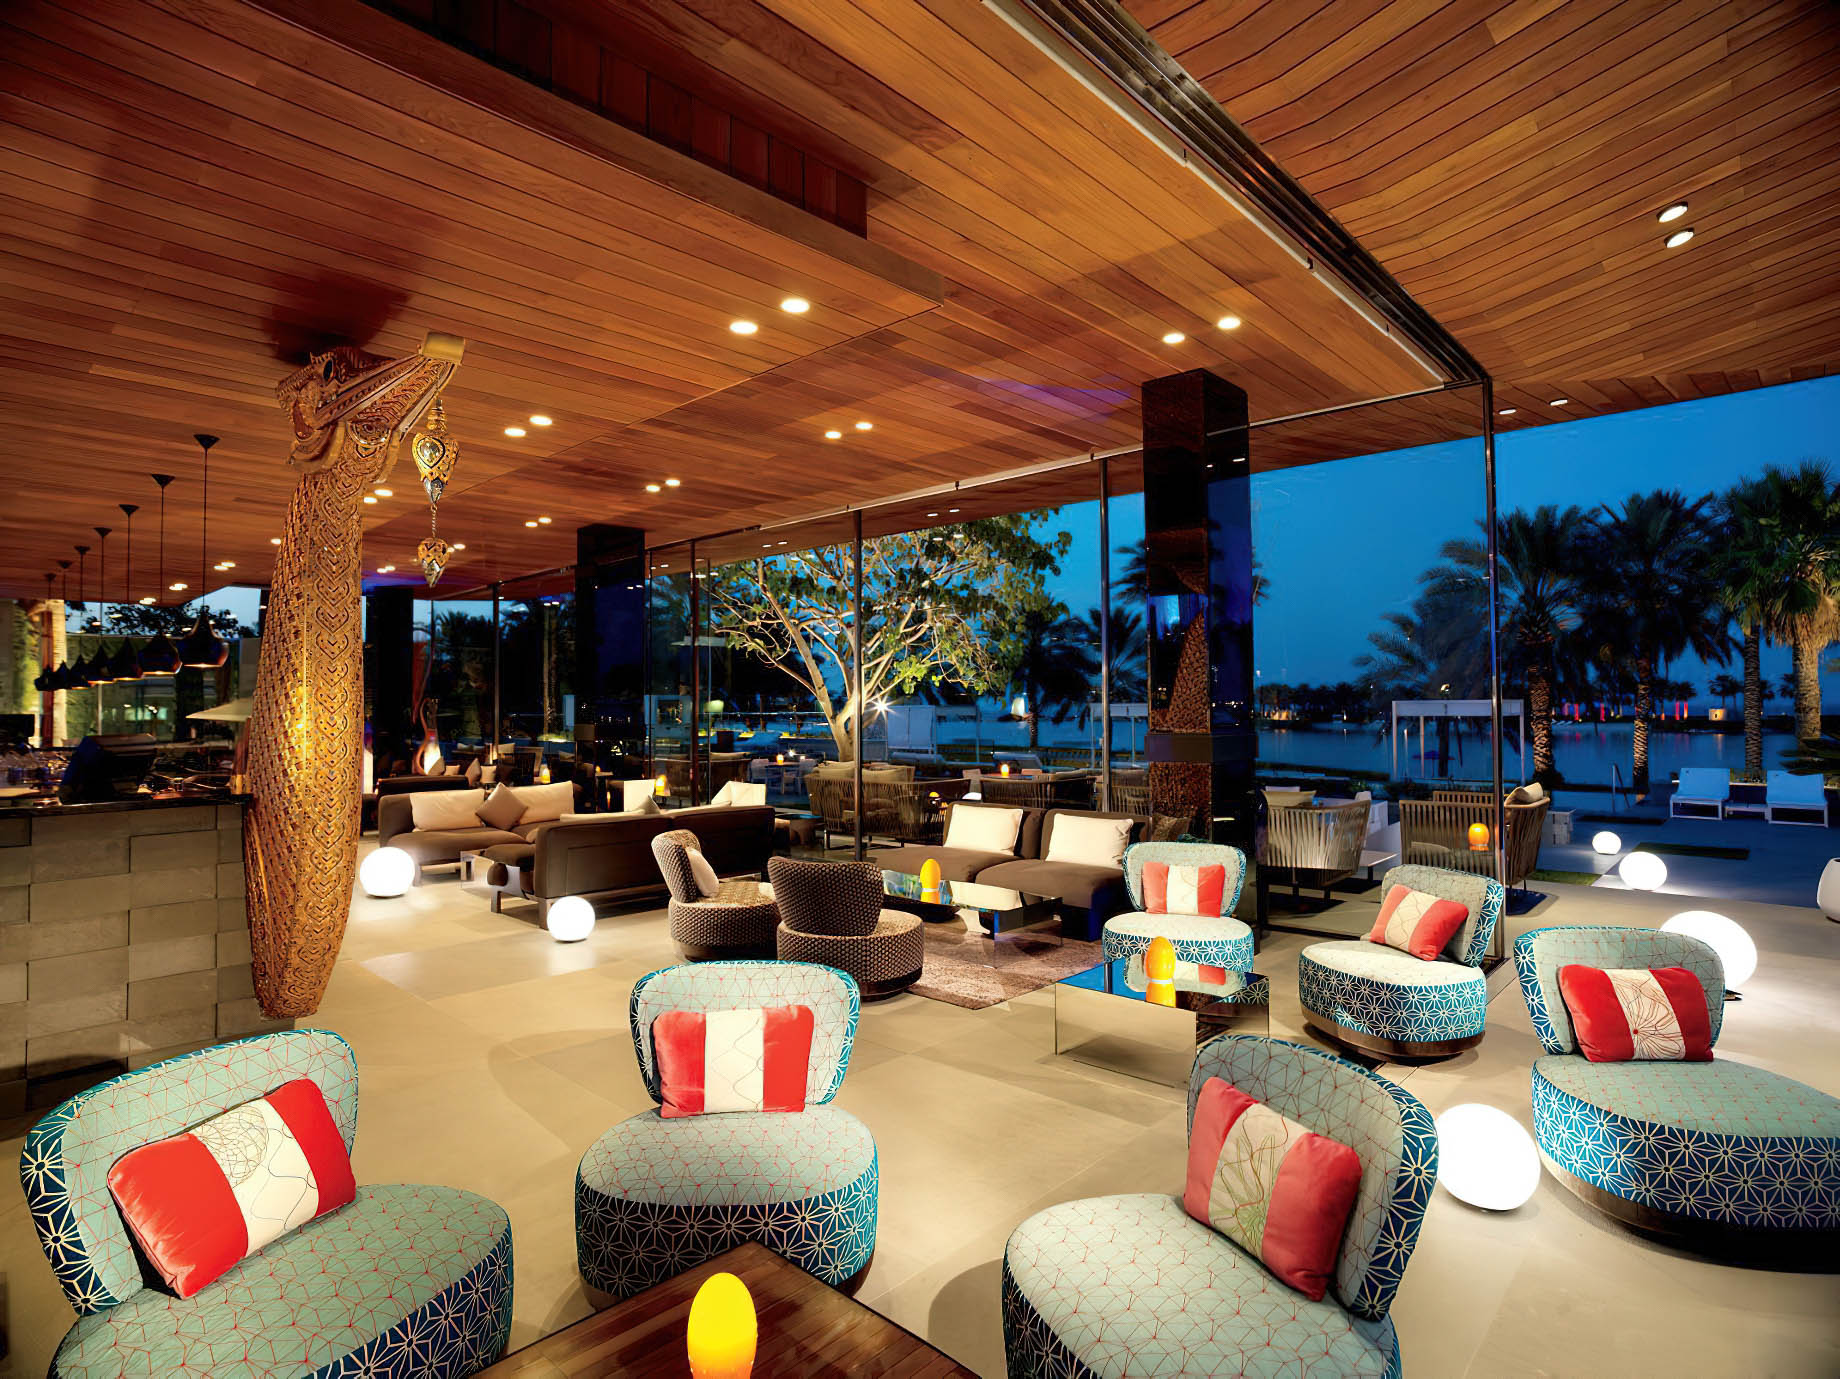 The Ritz-Carlton, Bahrain Resort Hotel – Manama, Bahrain – Thai Lounge Restaurant Seating